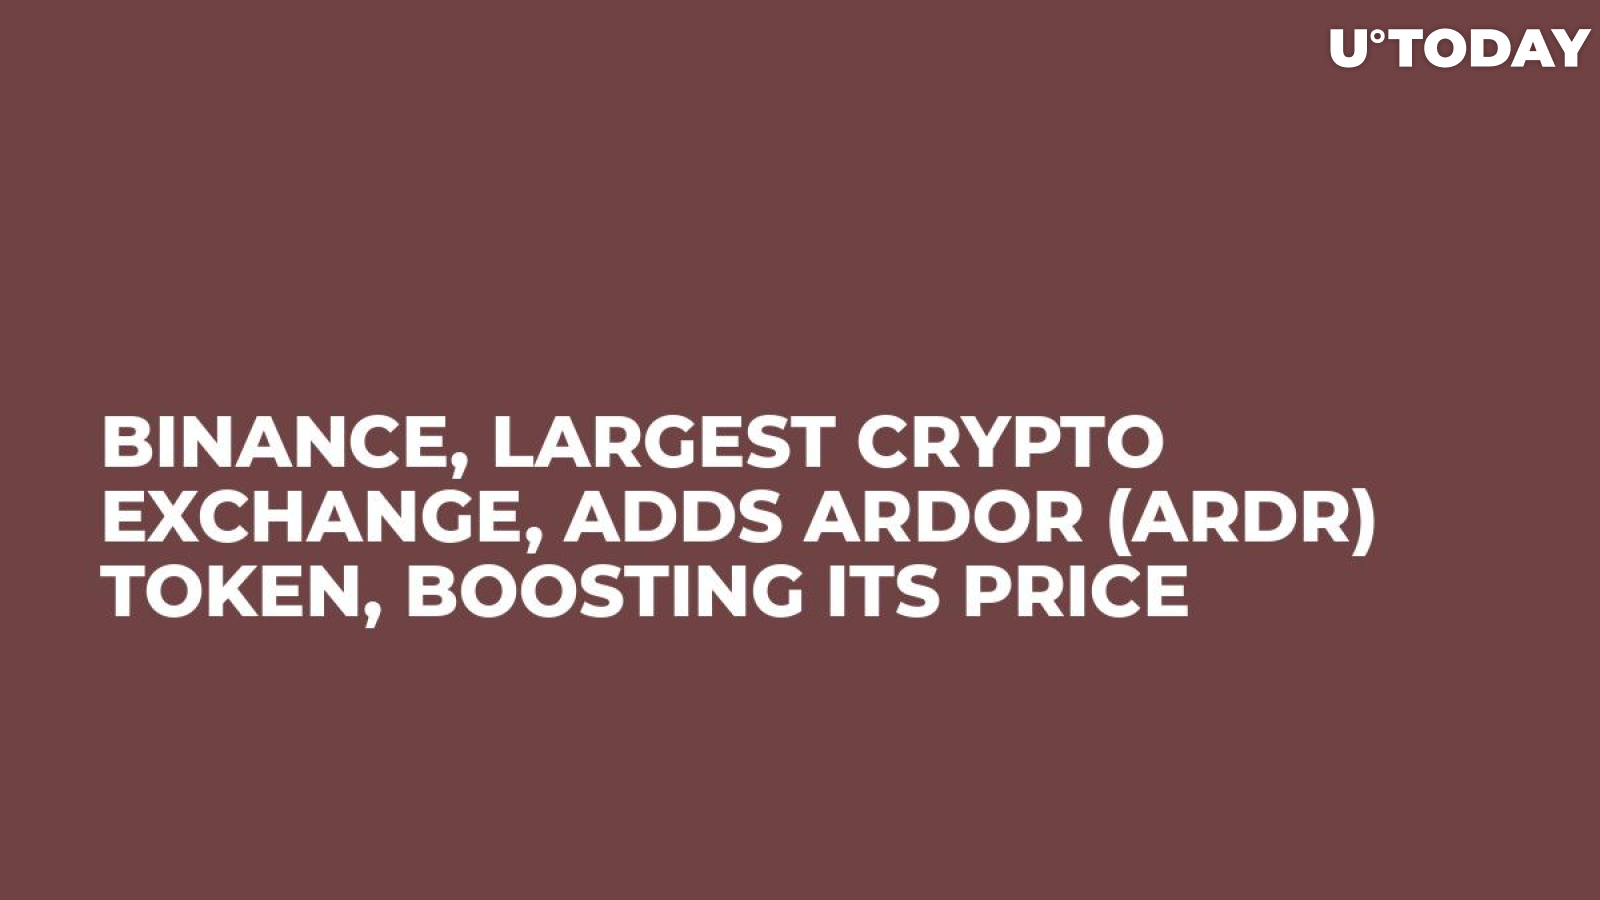 ardr crypto price